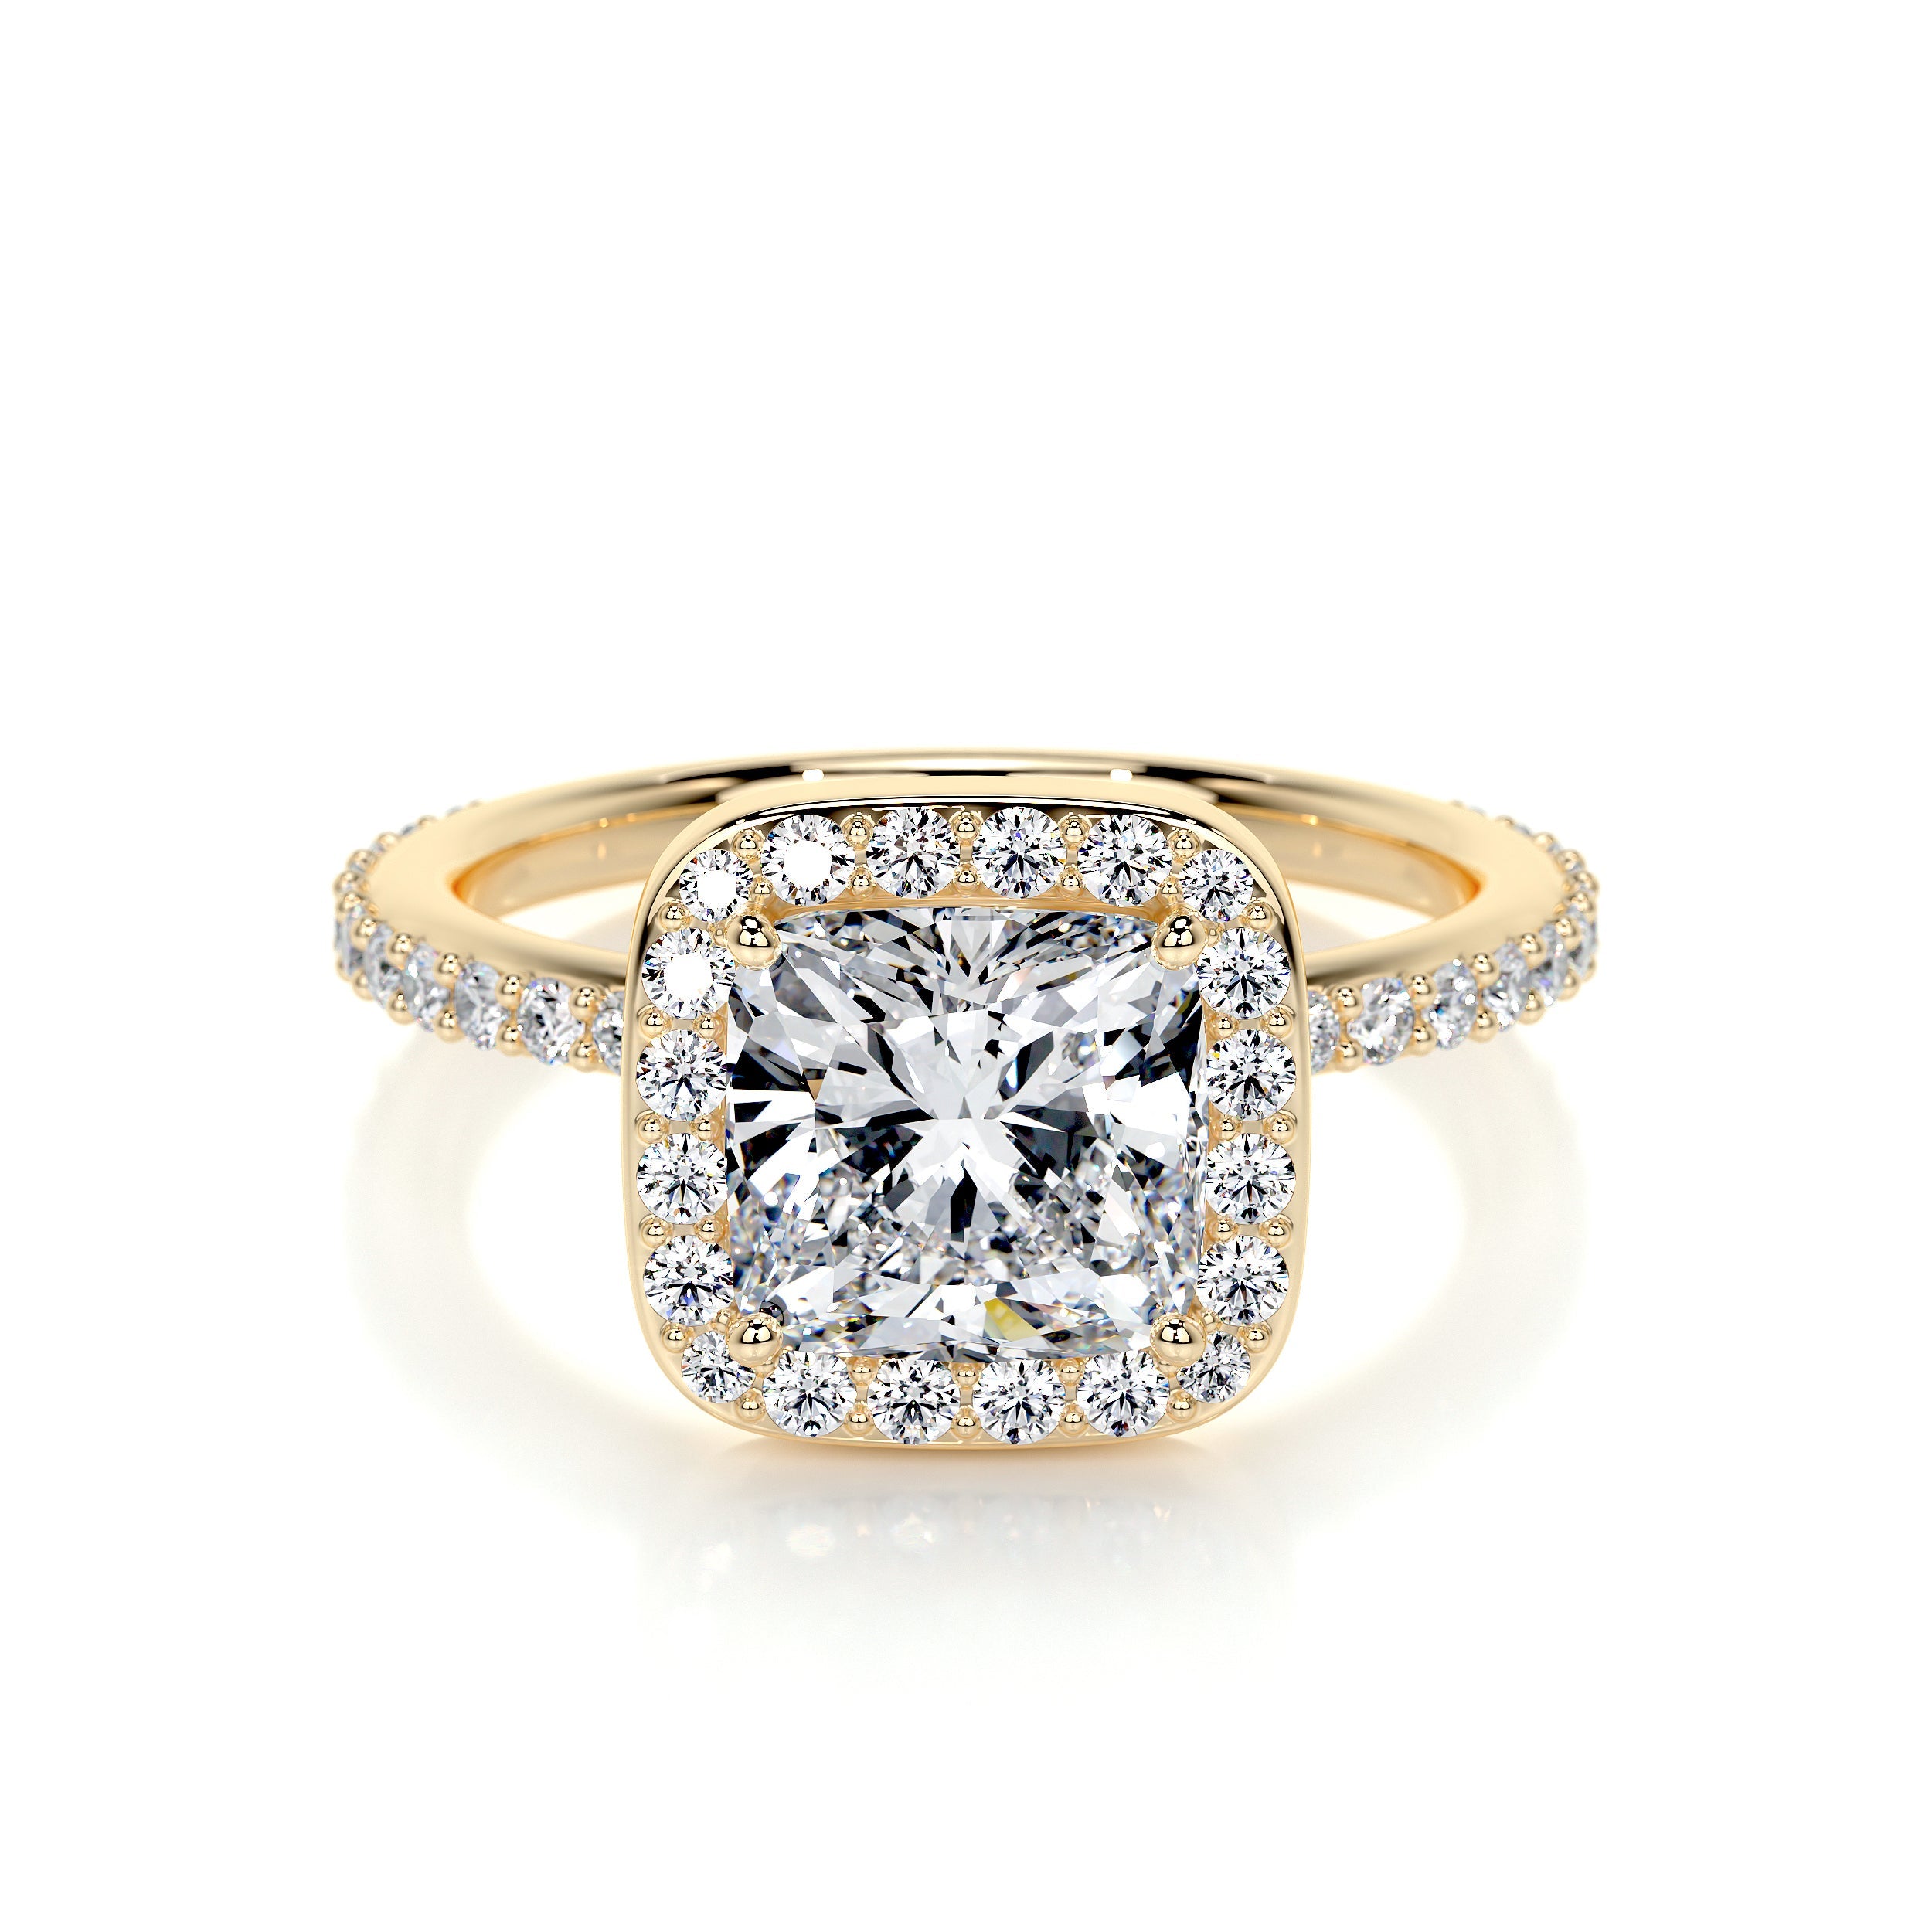 20 Brilliant Cushion Cut Wedding Engagement Rings -  Elegantweddinginvites.com Blog | Dream engagement rings, Engagement ring  cuts, Popular engagement rings